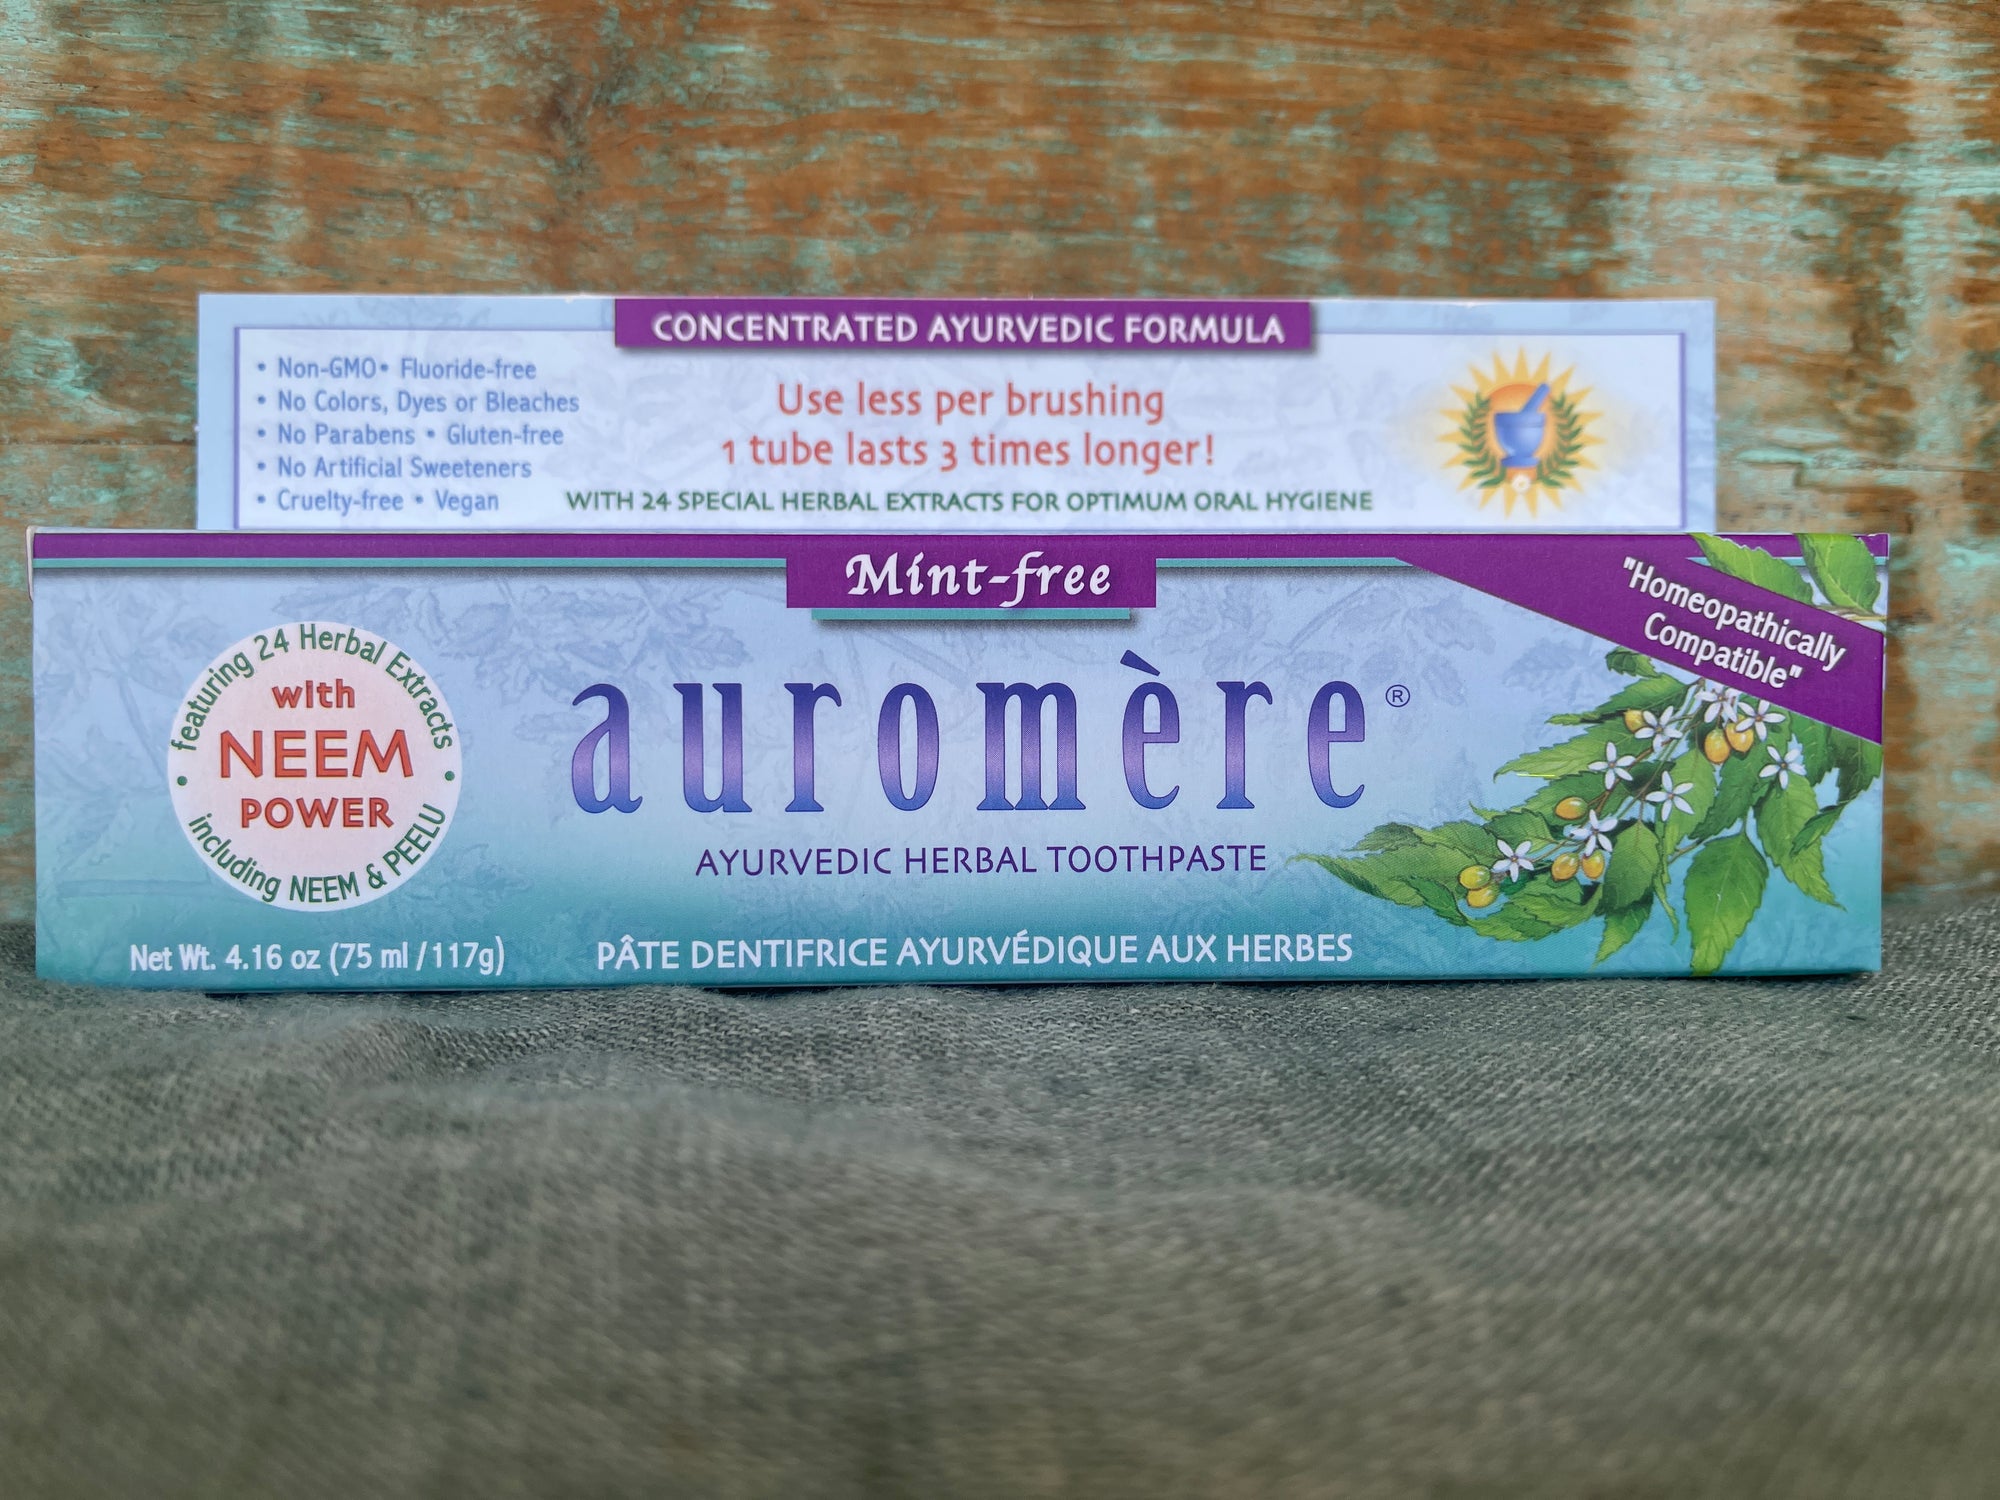 Auromere Ayurvedic Herbal Toothpaste